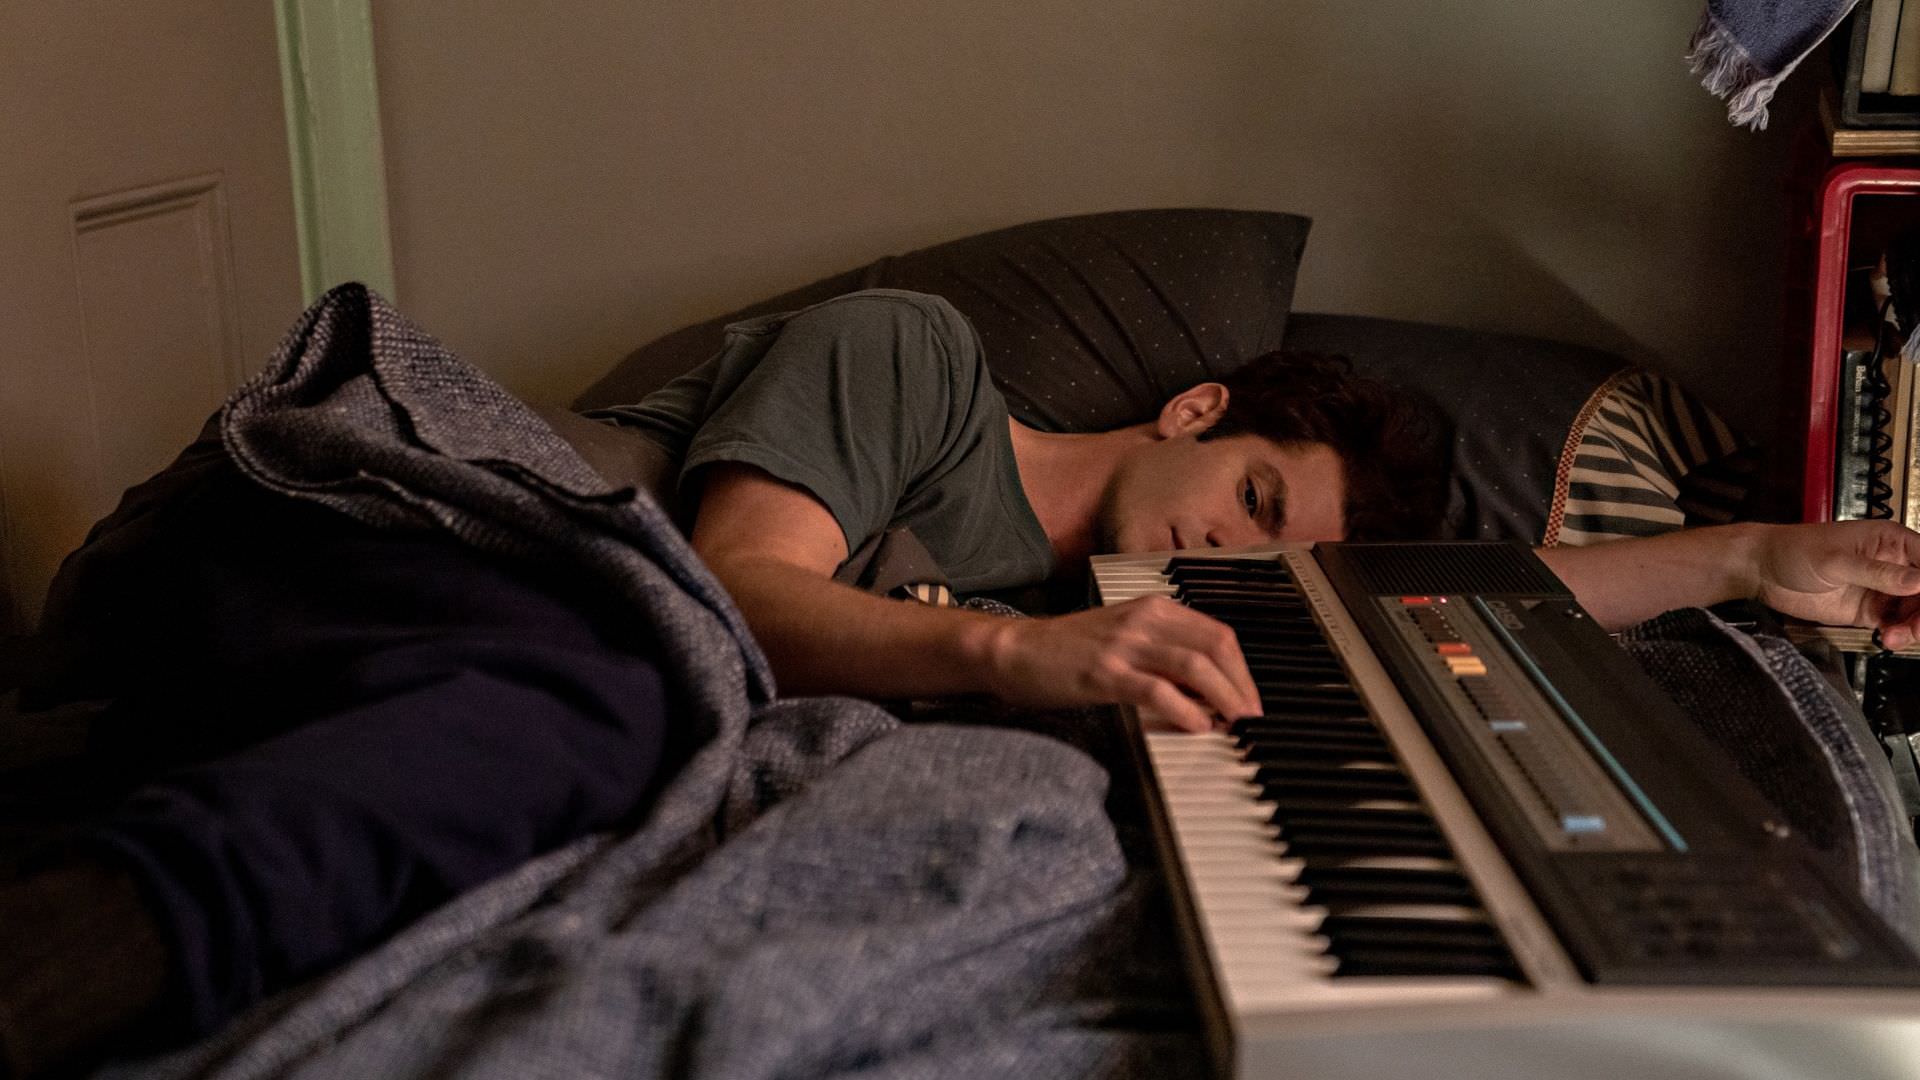 اندرو گارفیلد در نقش جاناتان لارسون در حال زدن پیانو روی تخت در فیلم Tick, Tick... Boom